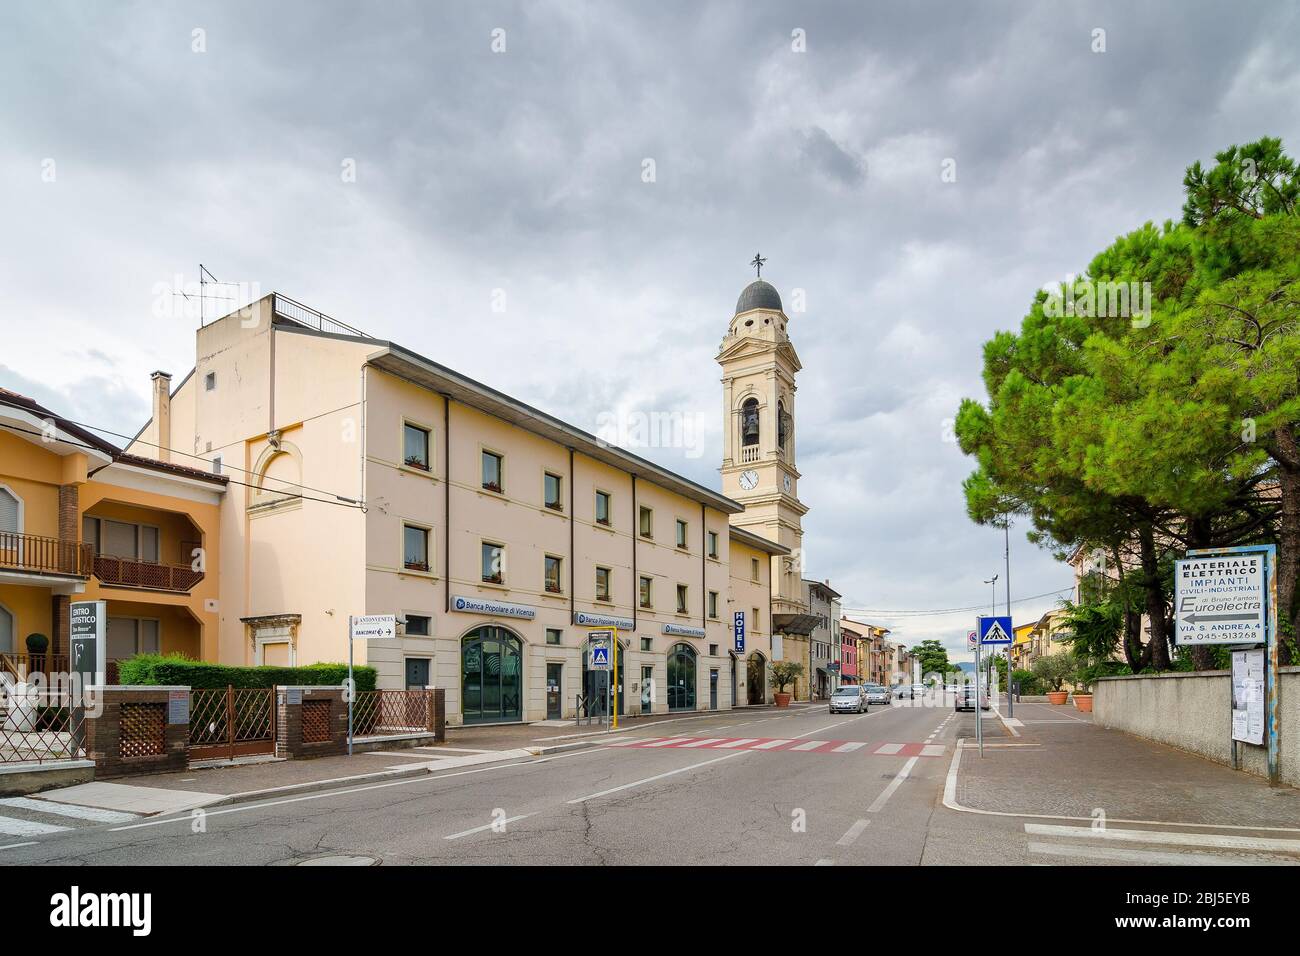 Vérone, Italie - 5 septembre 2015 : clocher à Dossobuono, province de Vérone, Italie Banque D'Images